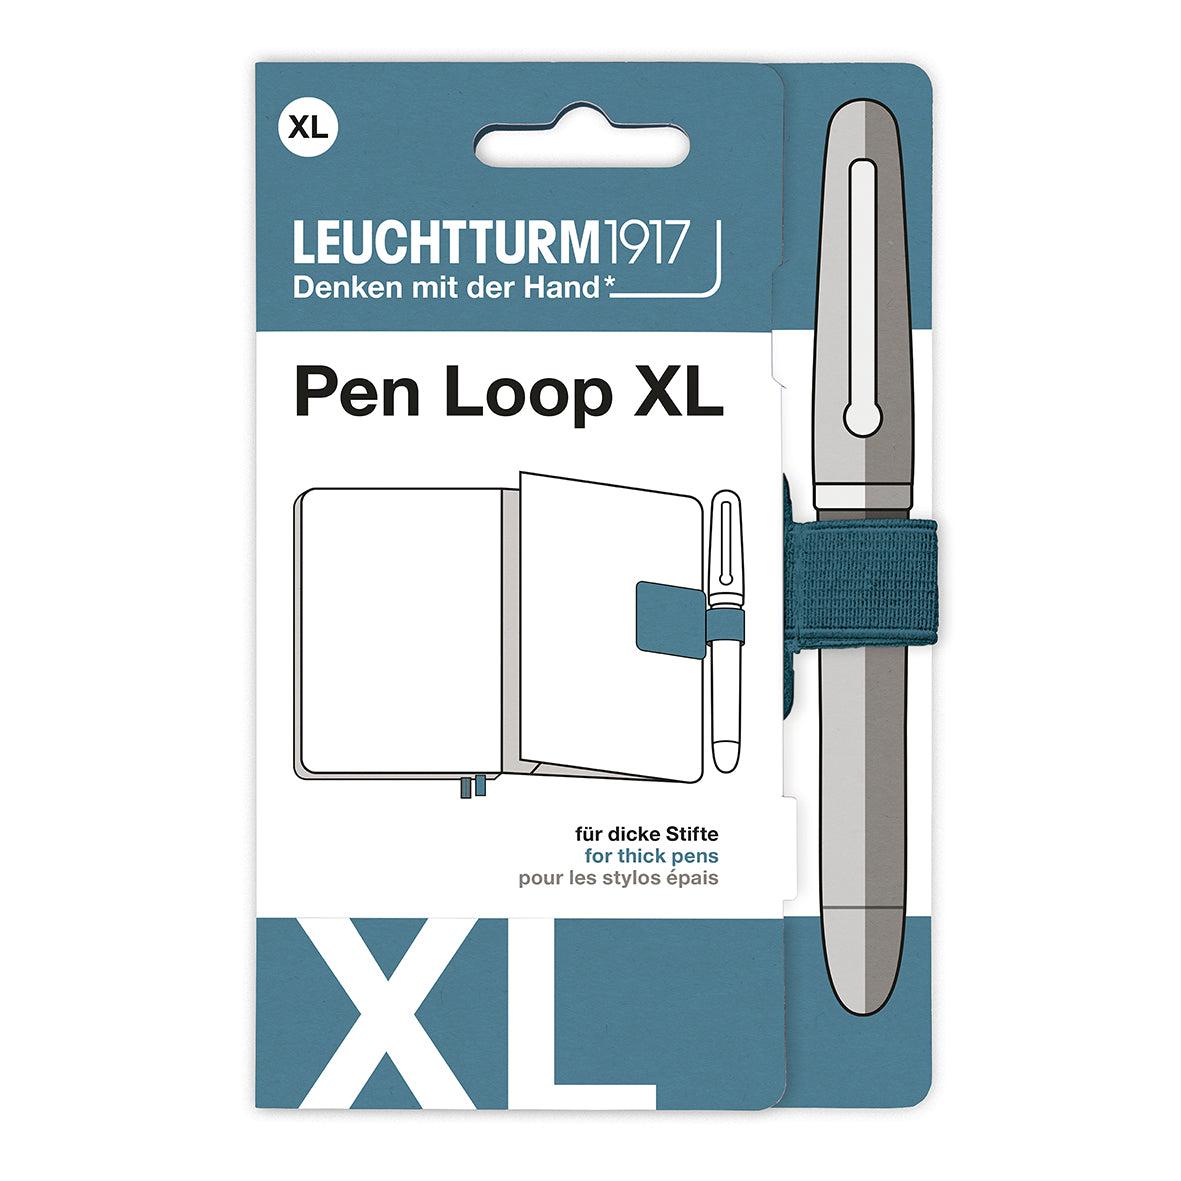 LCHT Pen Loop XL-Accessoire-Leuchtturm 1917-Stone blue-Papeterie du Dôme